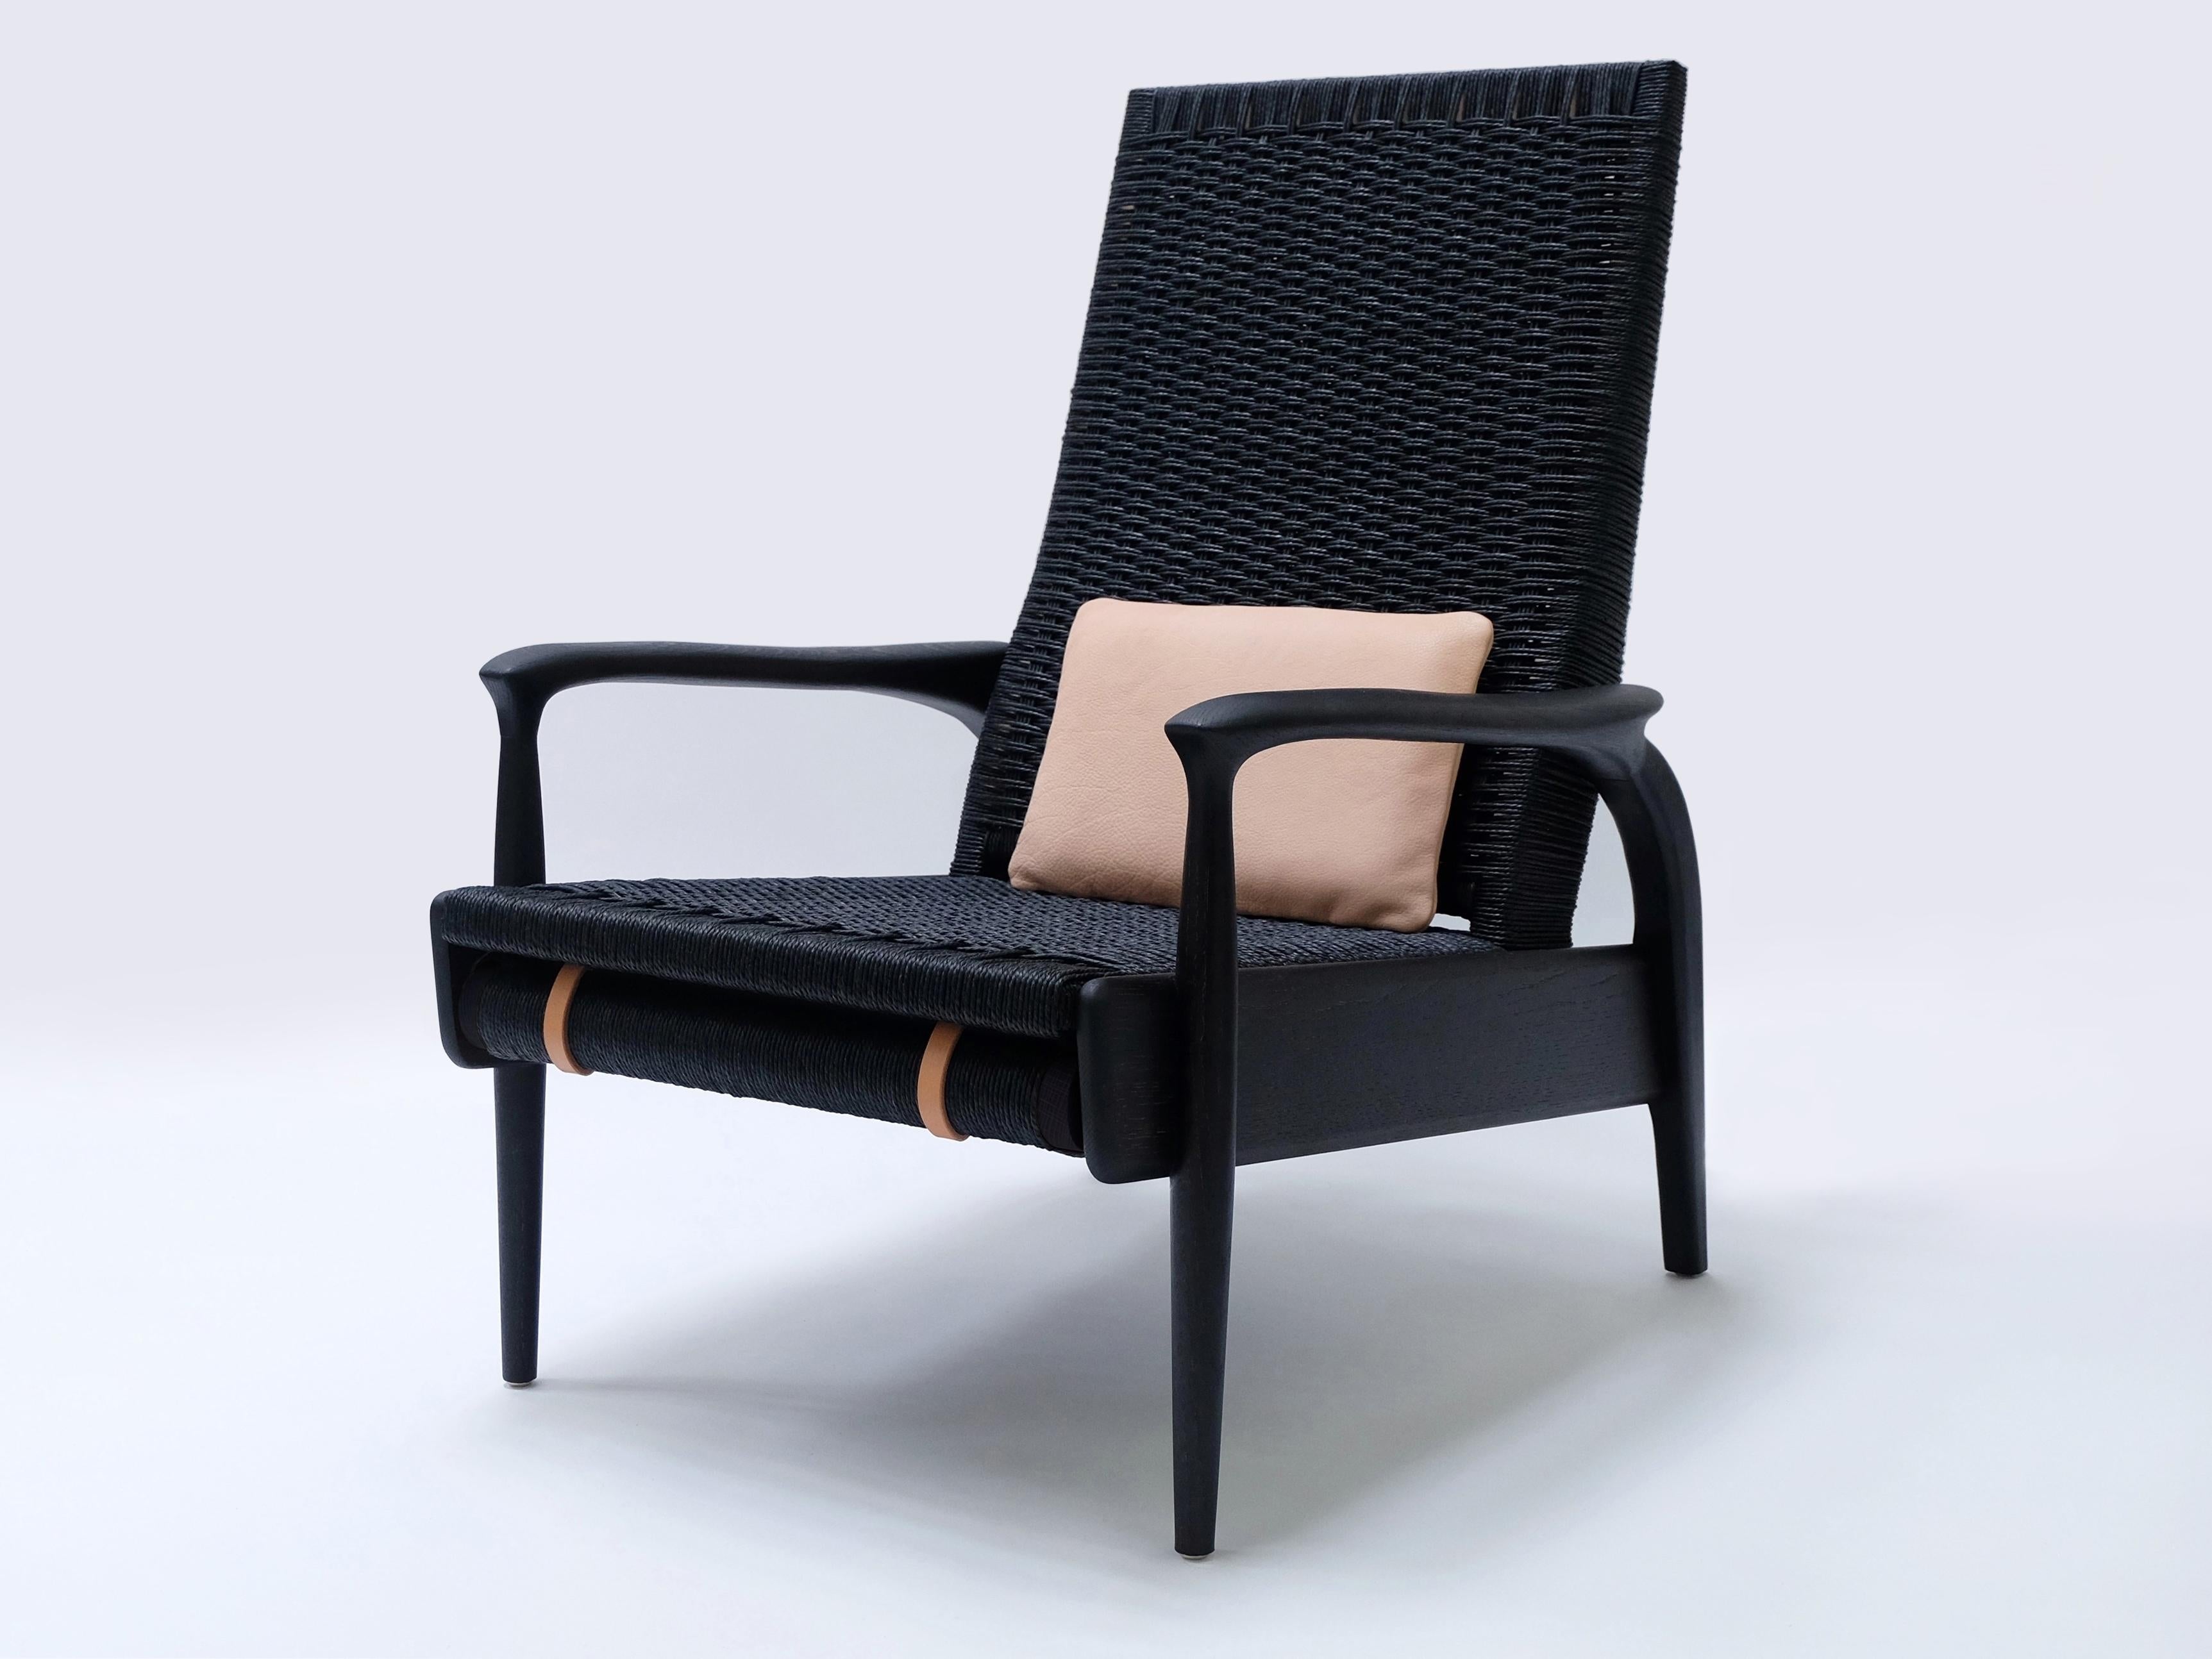 Maßgefertigte, handgefertigte Eco-Lounge-Stühle FENDRIK von Studio180degree
Abgebildet in nachhaltiger, massiver, naturgeschwärzter Eiche und schwarzer Original Danish Cord

Edel - taktil - raffiniert - nachhaltig
Reclining Eco Lounge Chair FENDRIK